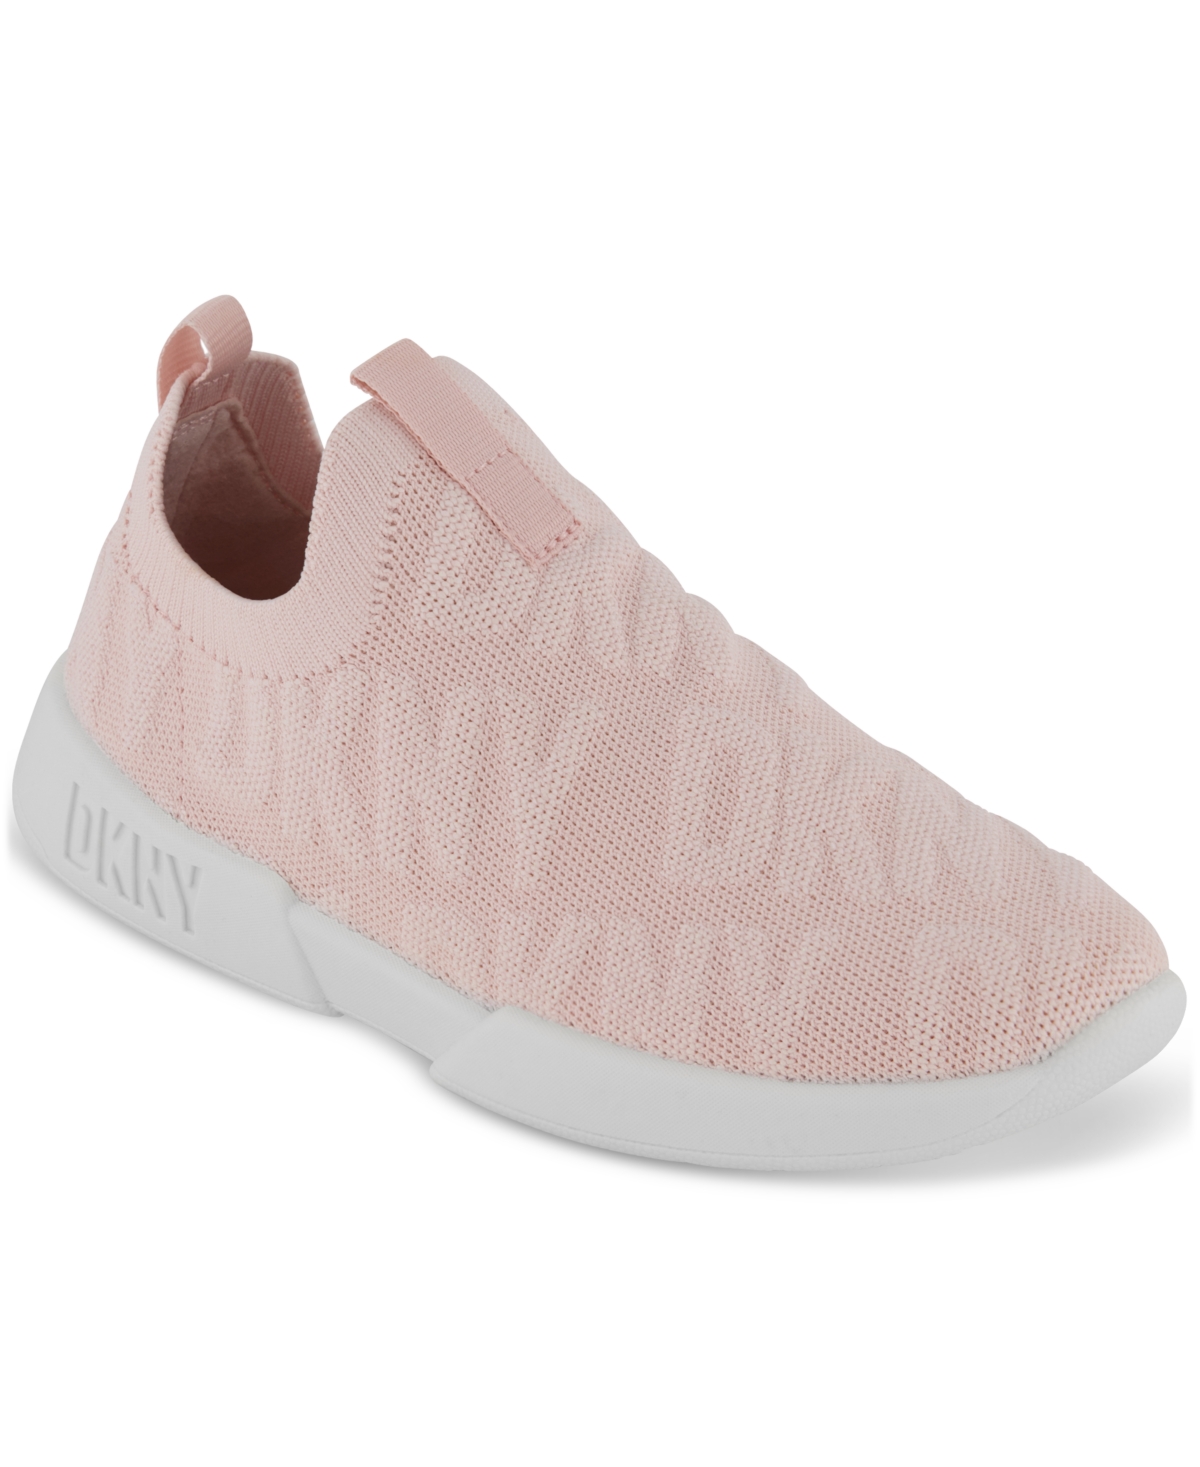 Shop Dkny Little & Big Girls Mia Rose Slip-on Knit Sneakers